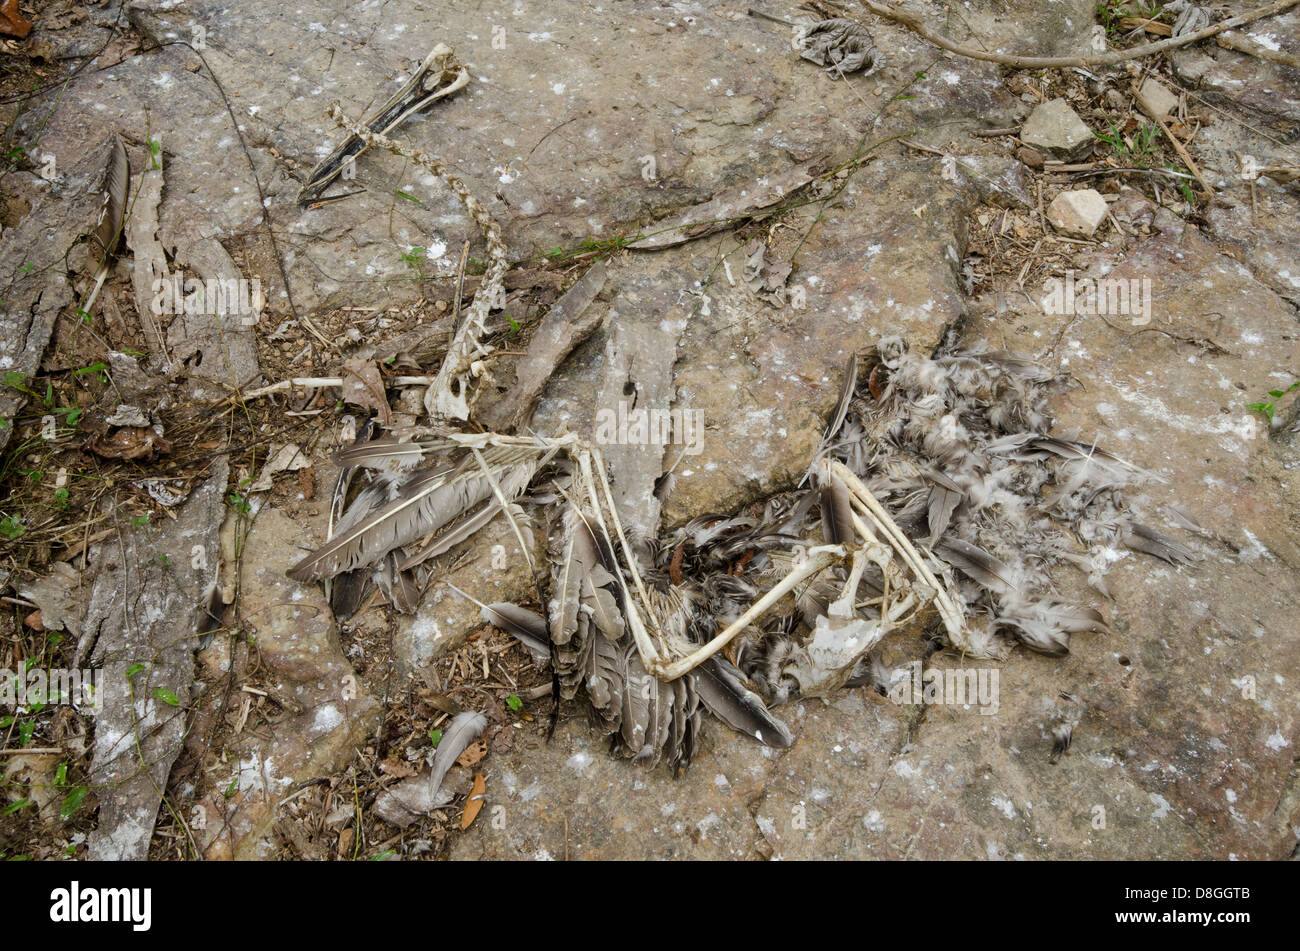 Rests of Brown Pelican (Pelecanus occidentalis carolinensis) at sea shore Stock Photo